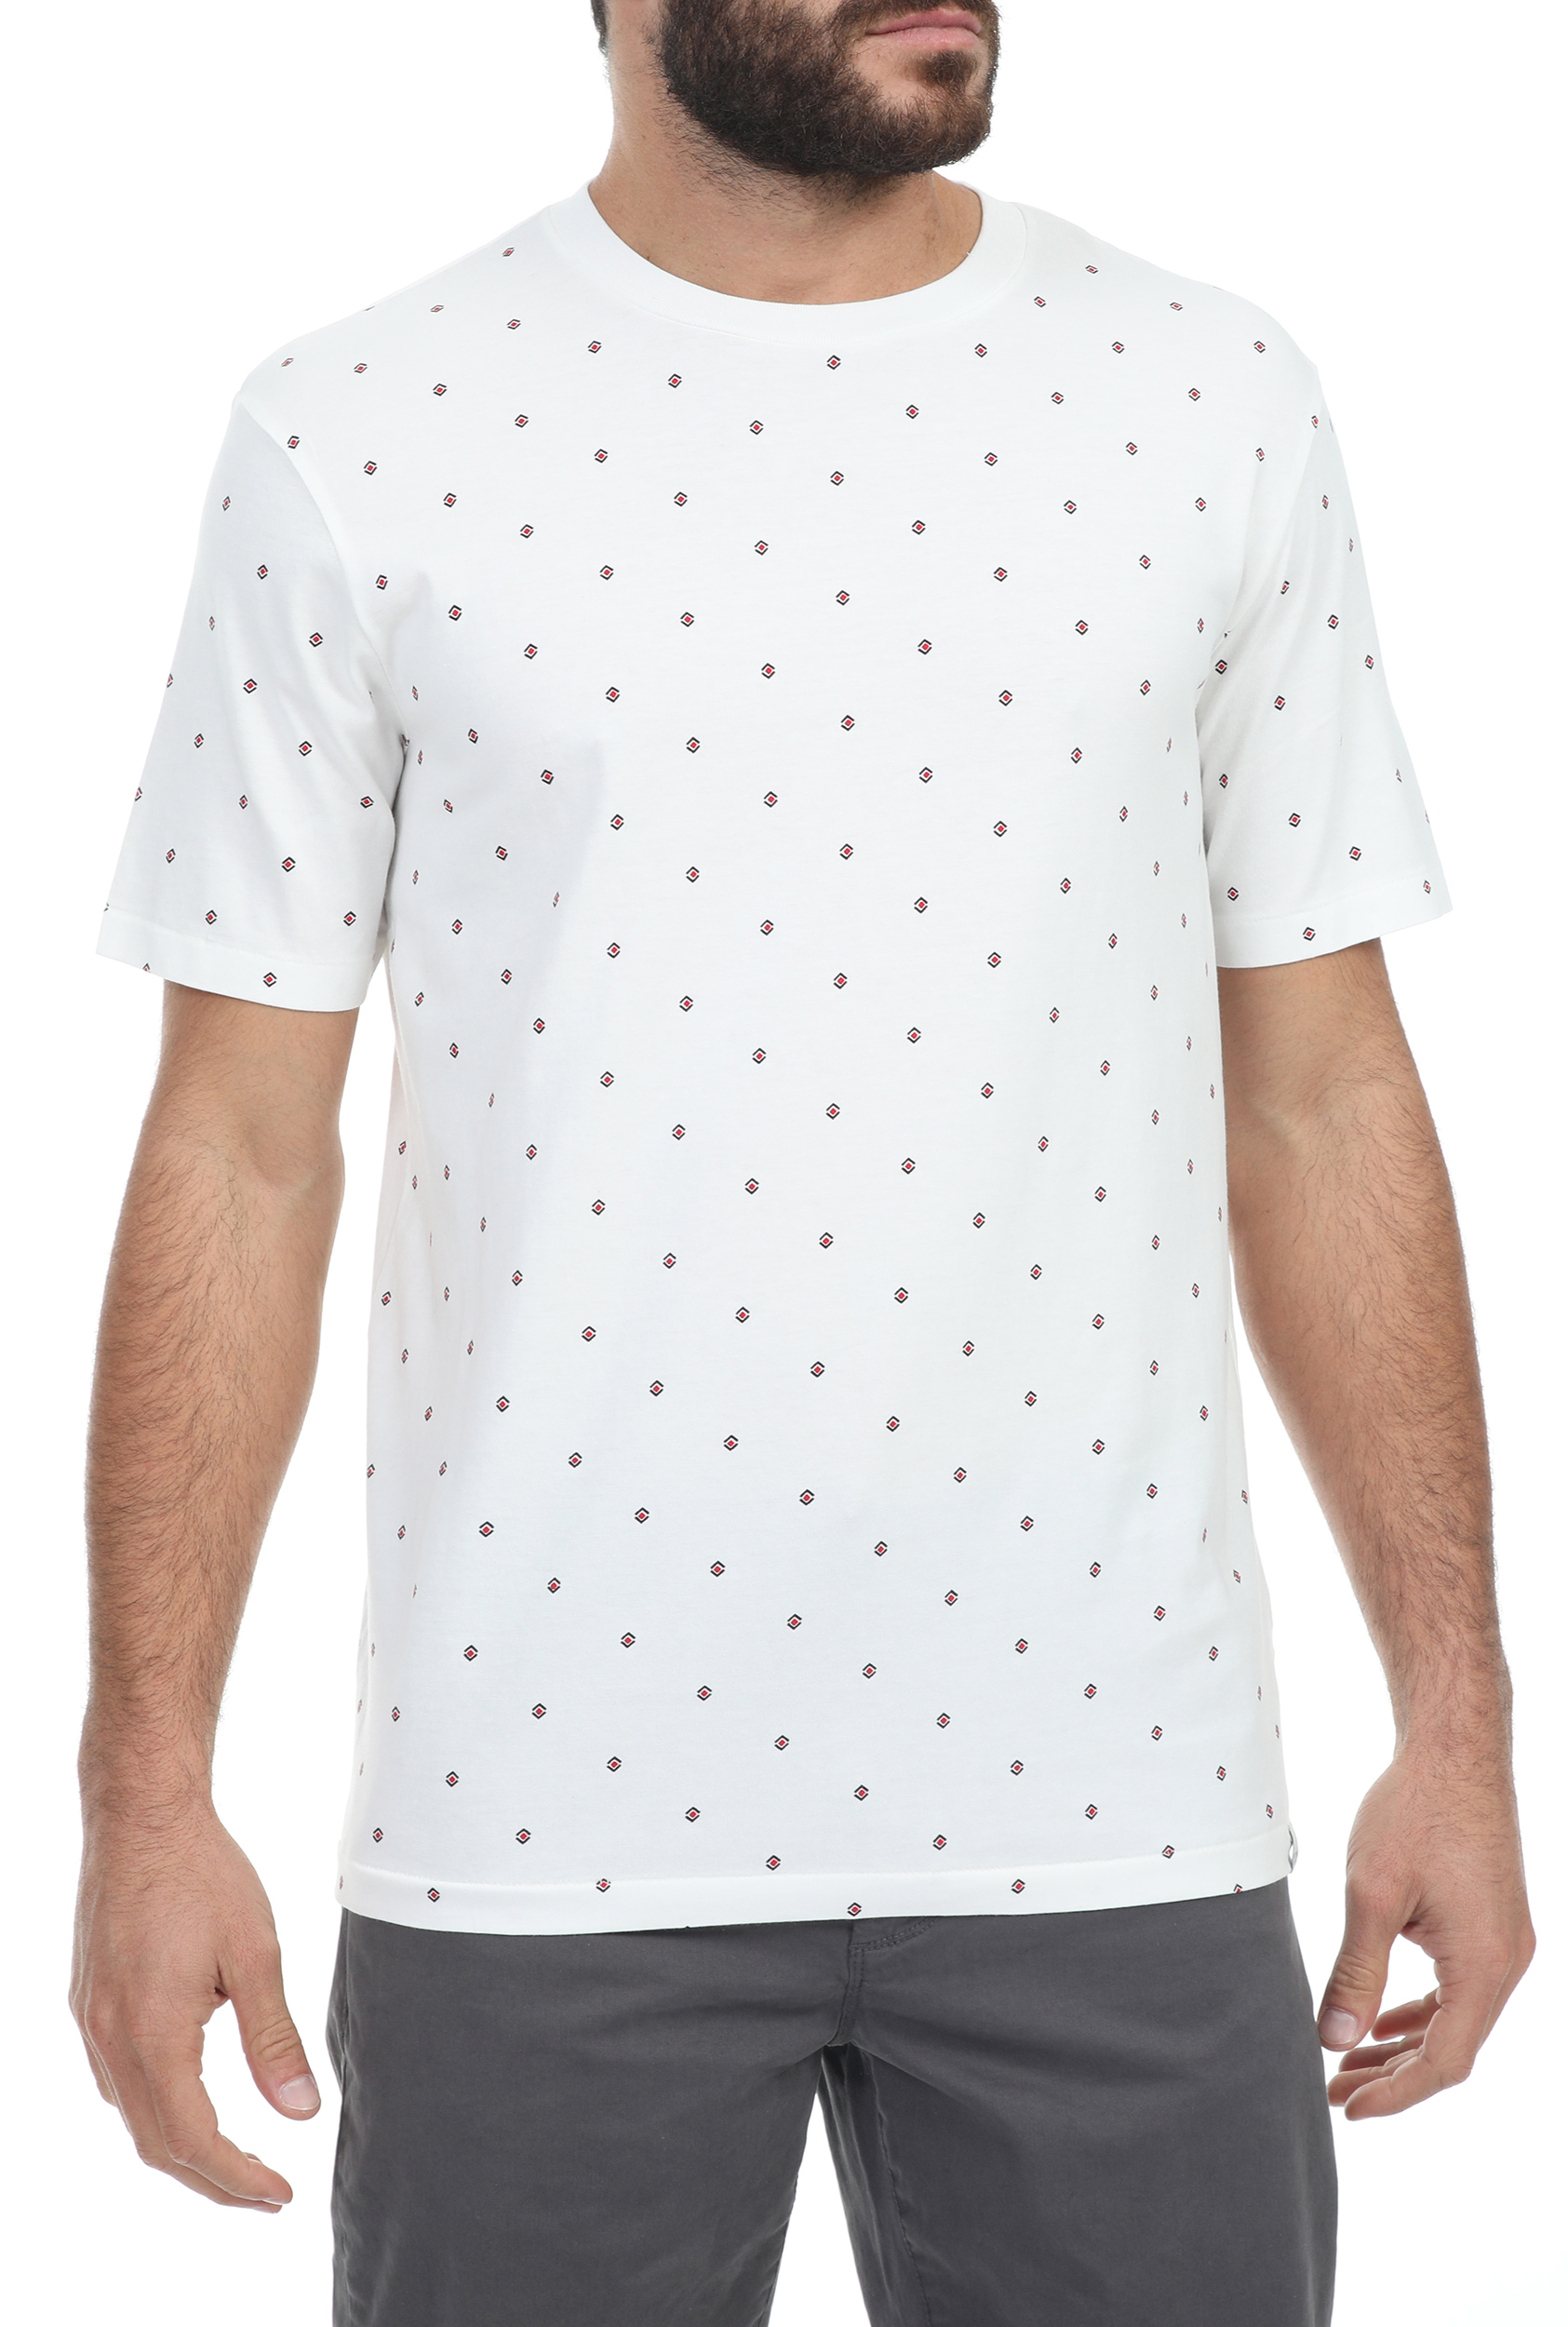 Ανδρικά/Ρούχα/Μπλούζες/Κοντομάνικες SCOTCH & SODA - Ανδρικό t-shirt SCOTCH & SODA λευκό μπλε